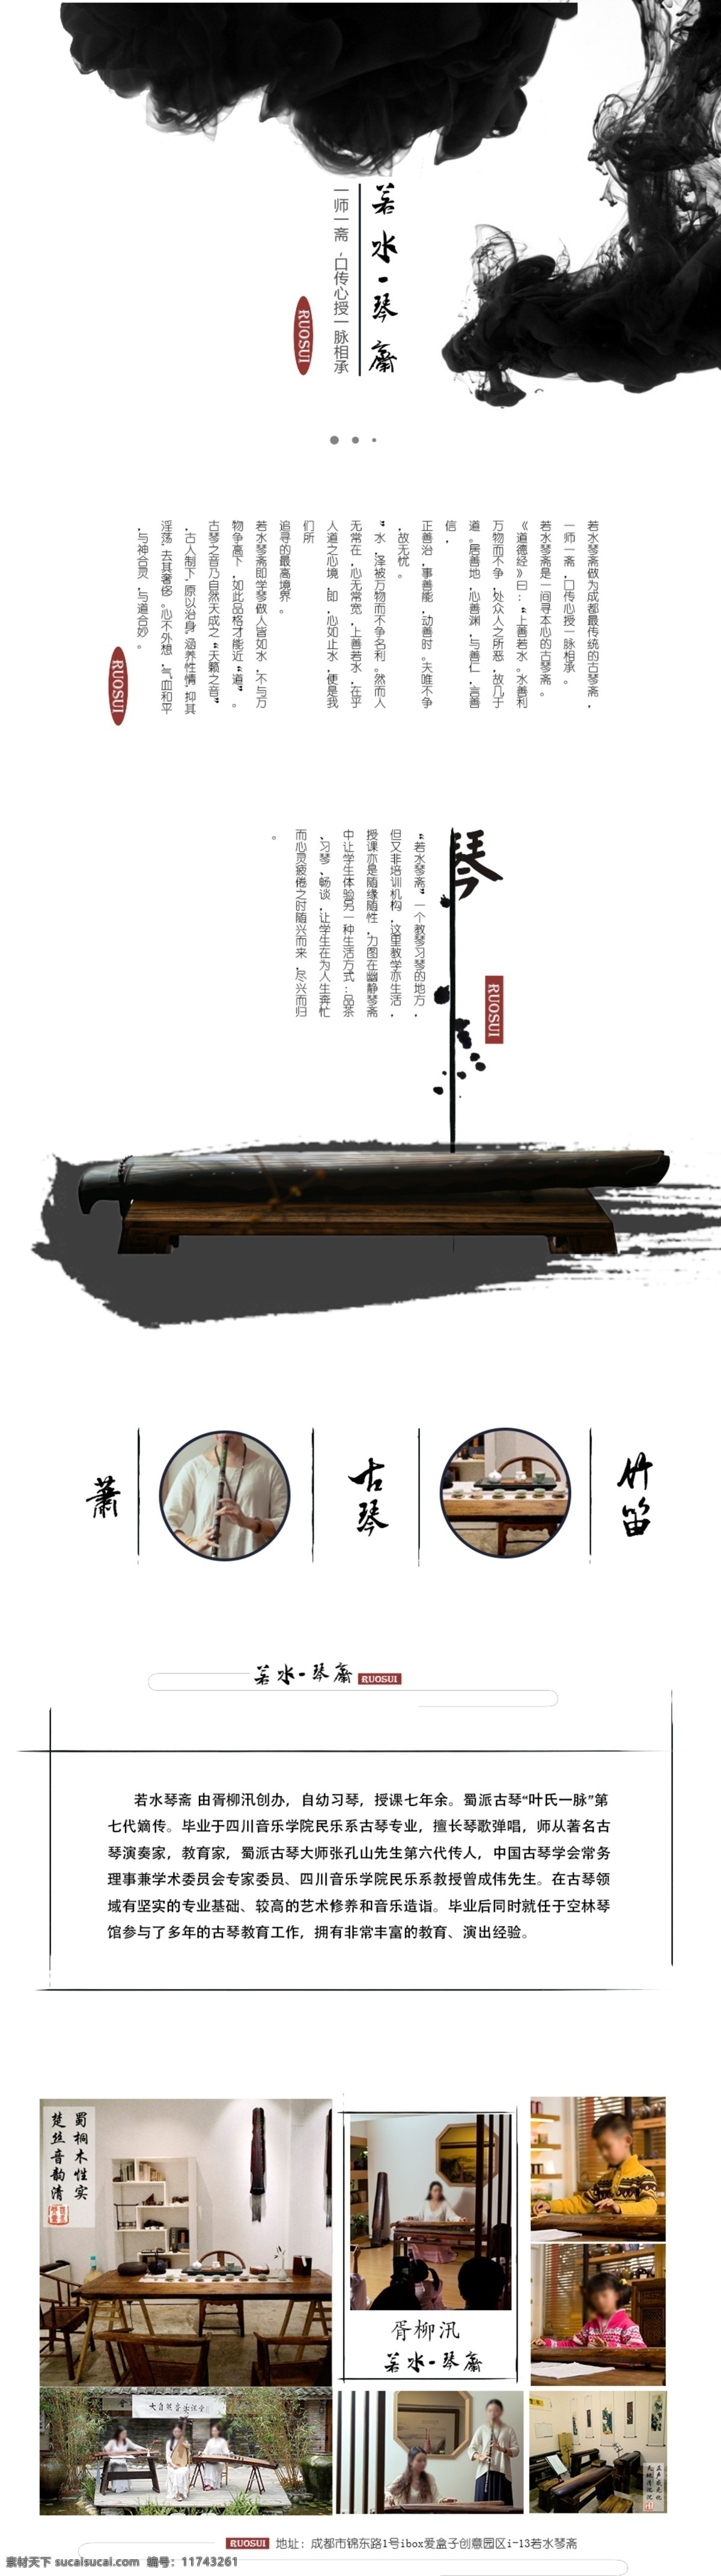 琴 古筝 古风 教育 首页 模板 中国风 古琴 教育首页 艺术主页 水墨 首图 艺术